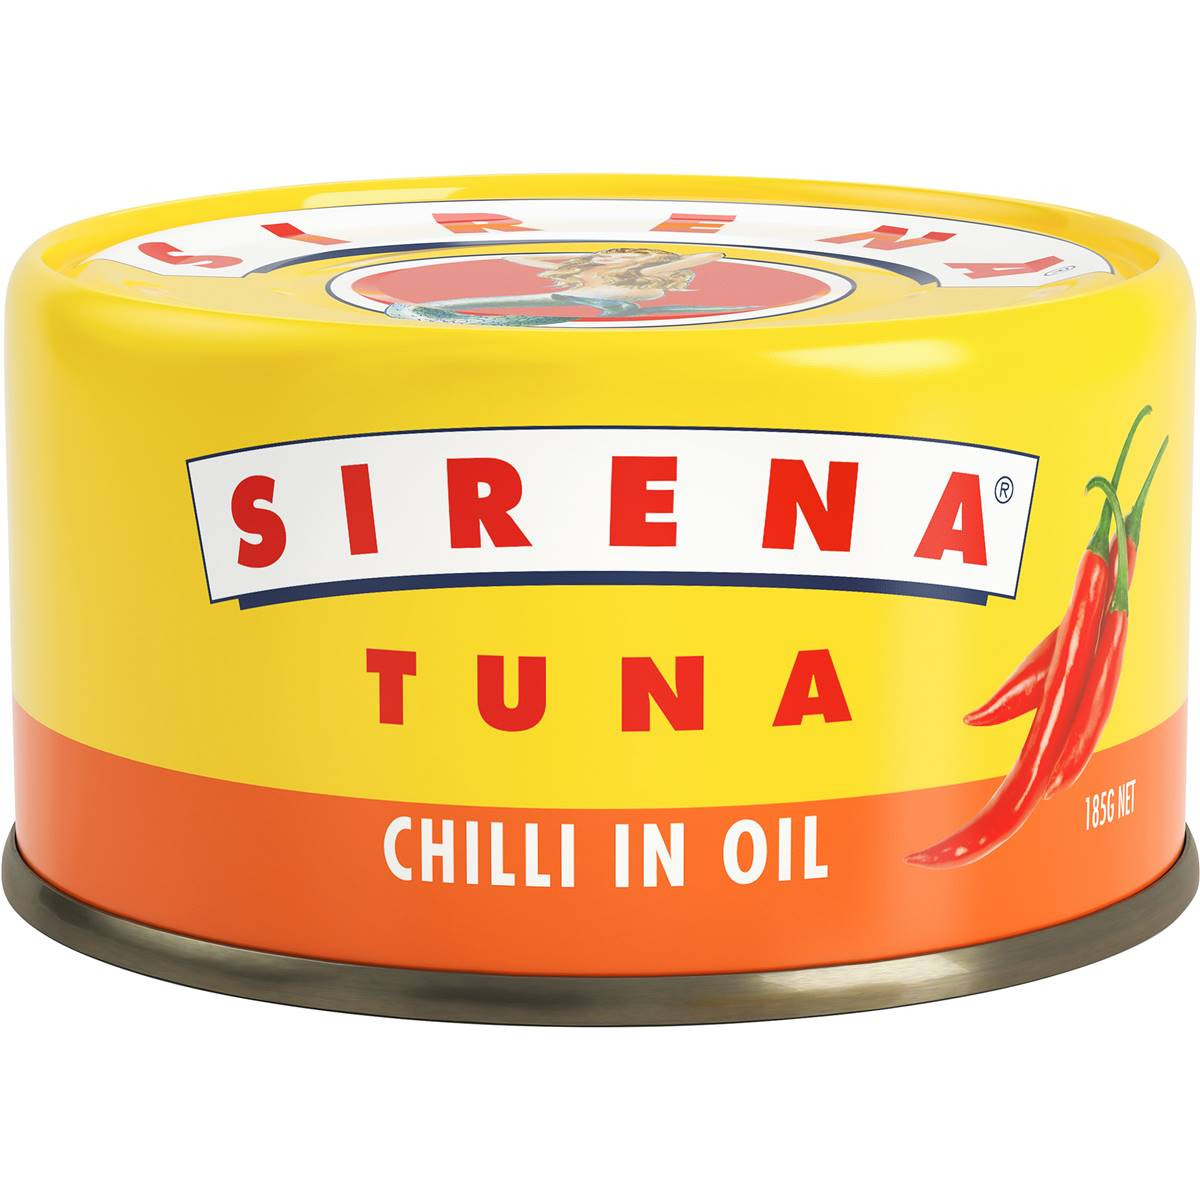 Sirena Tuna In Oil Chilli 185g